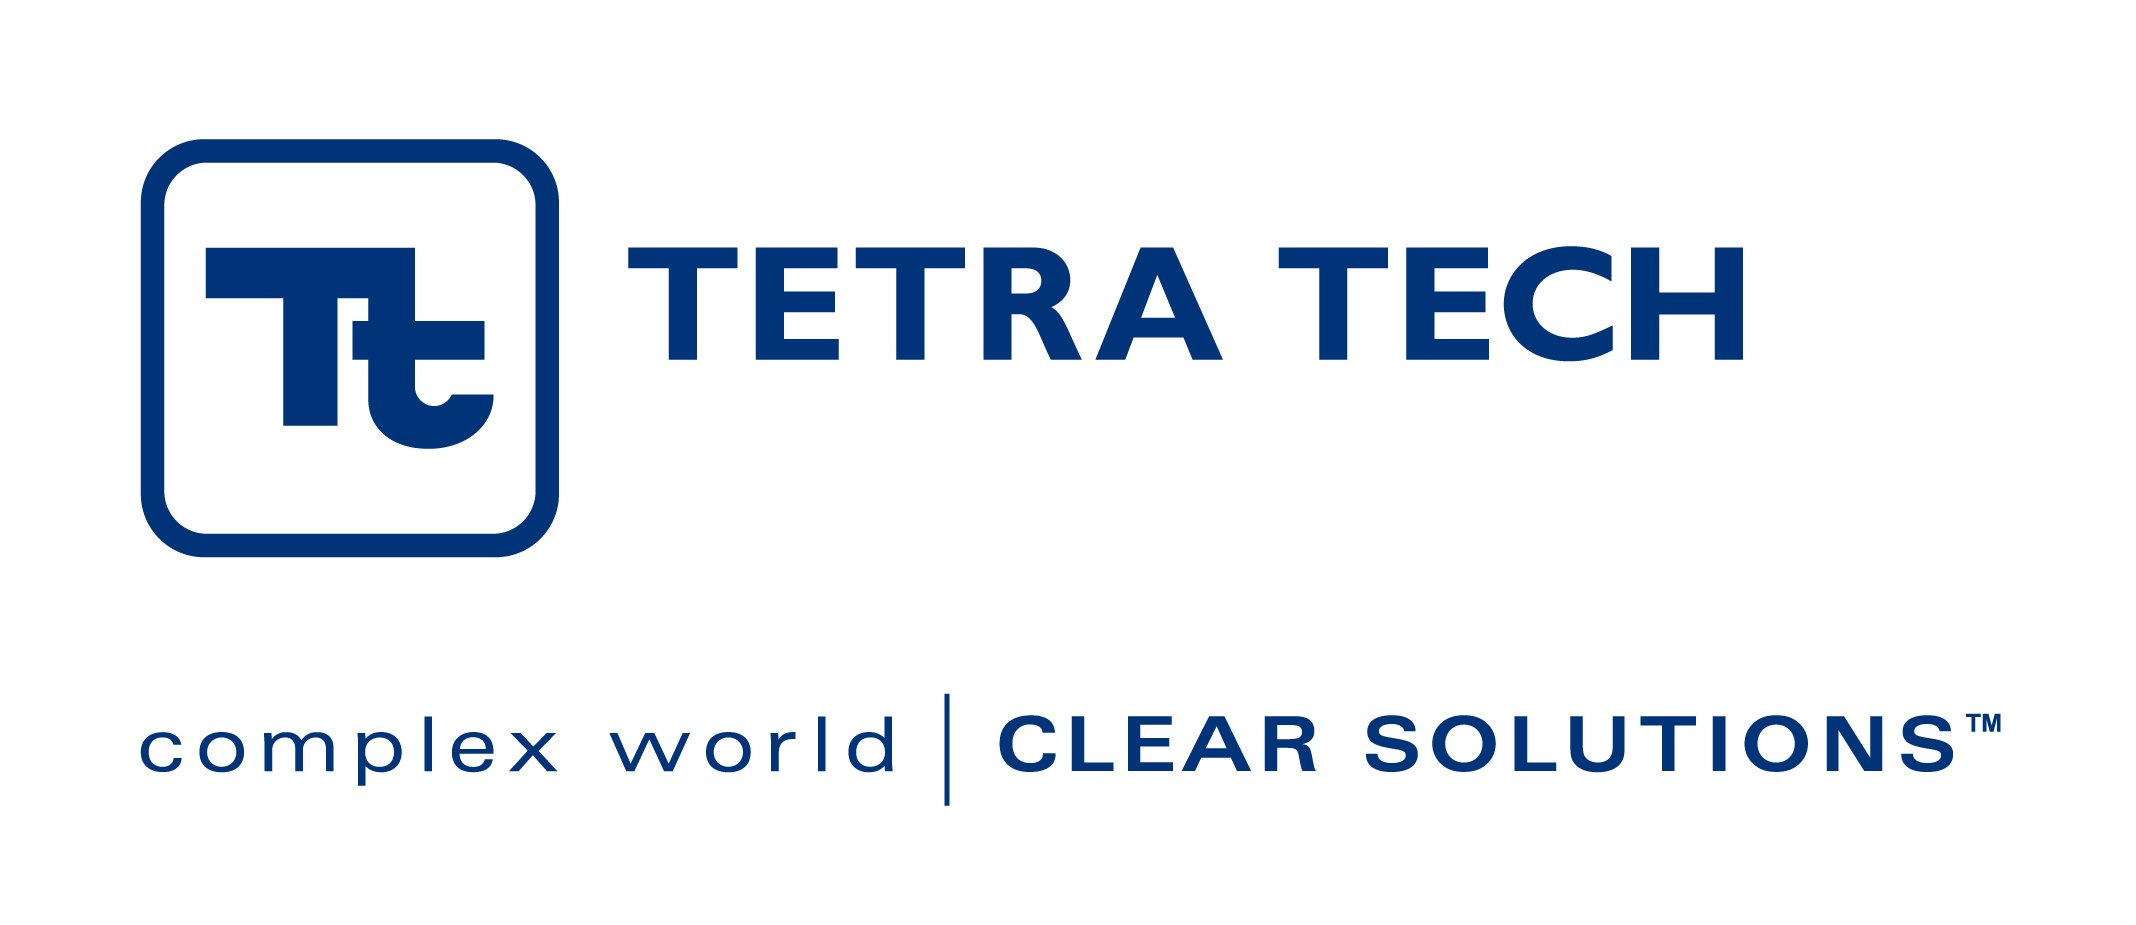 Tt-Logo-Combo-(Blue).jpg